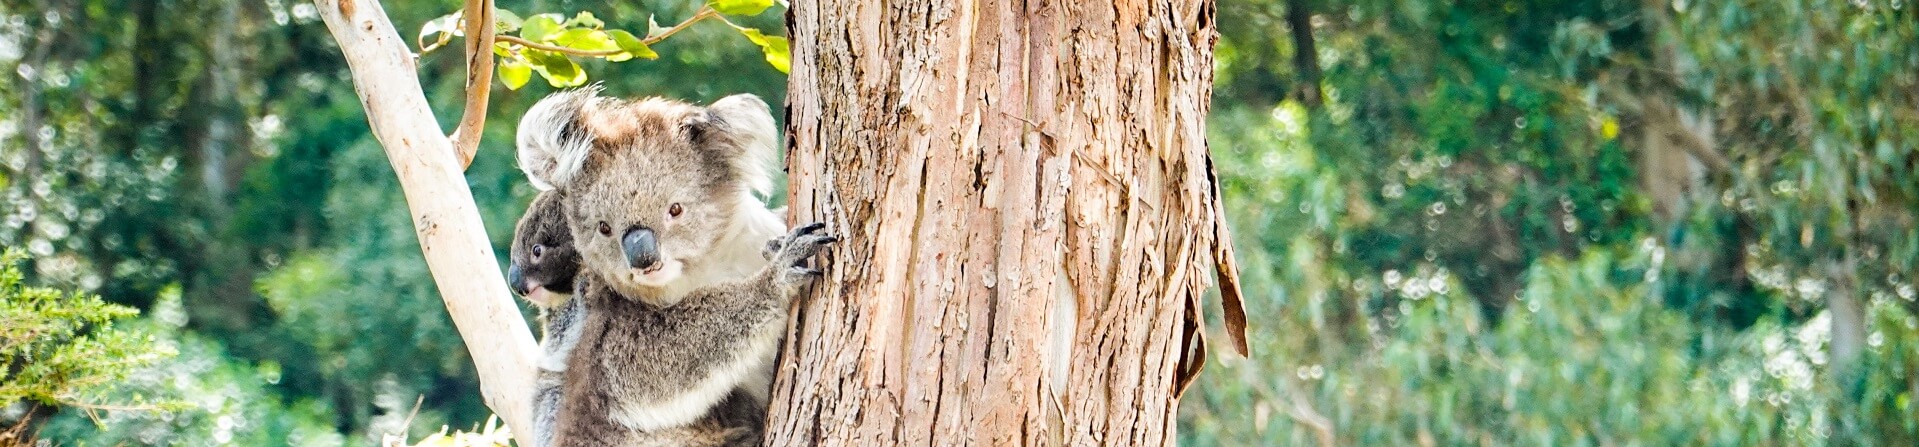 Are there still koalas at Kennett River?